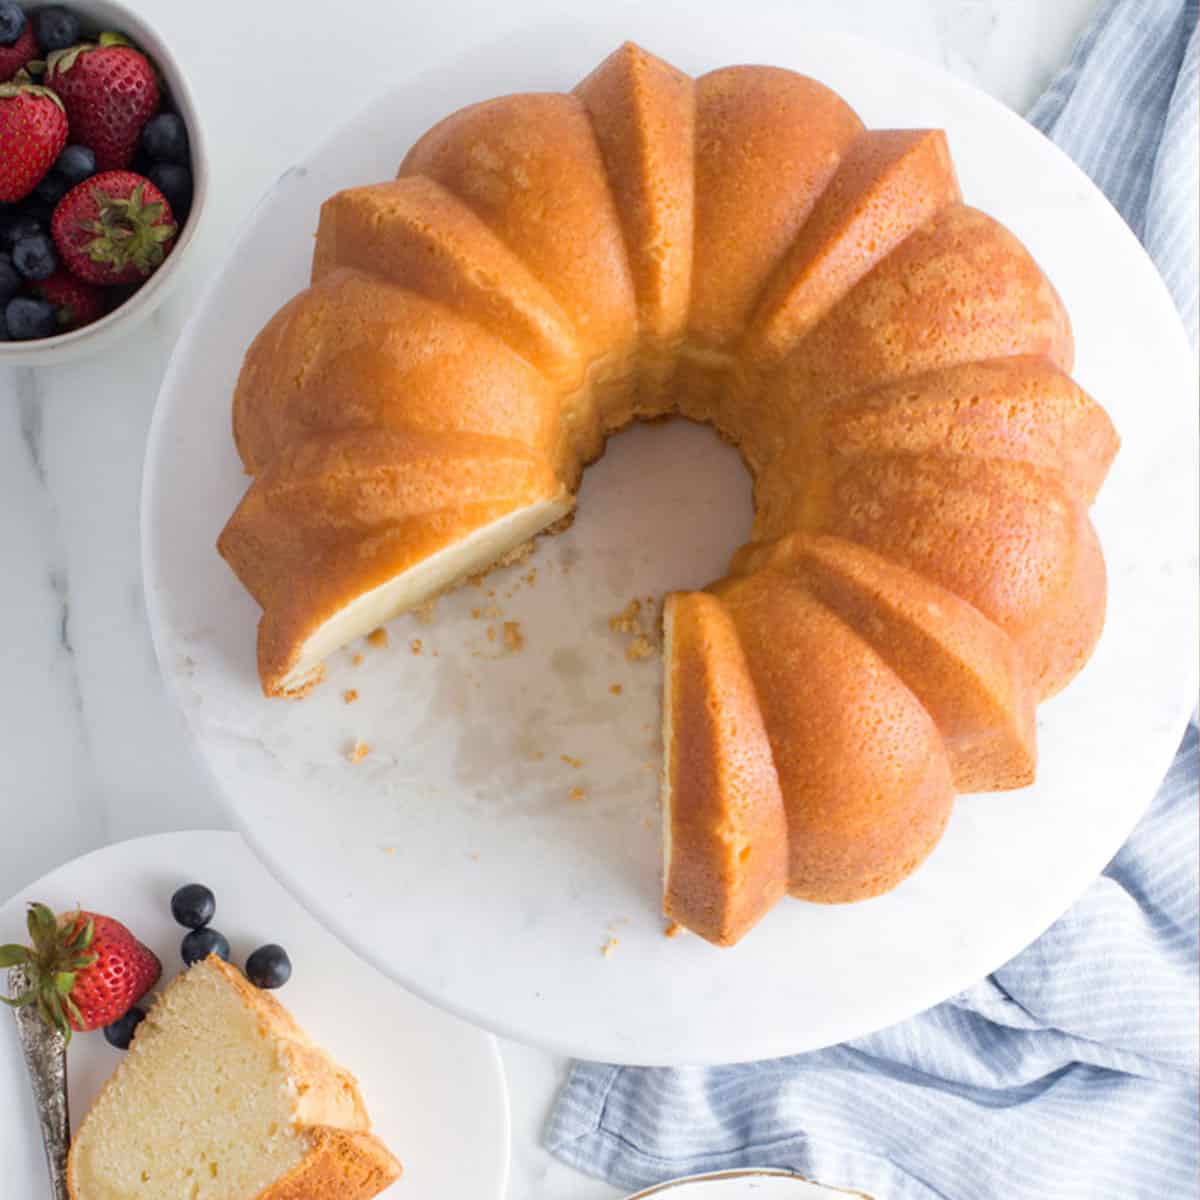 https://grandbaby-cakes.com/wp-content/uploads/2018/08/sour-cream-pound-cake-recipe-22.jpg